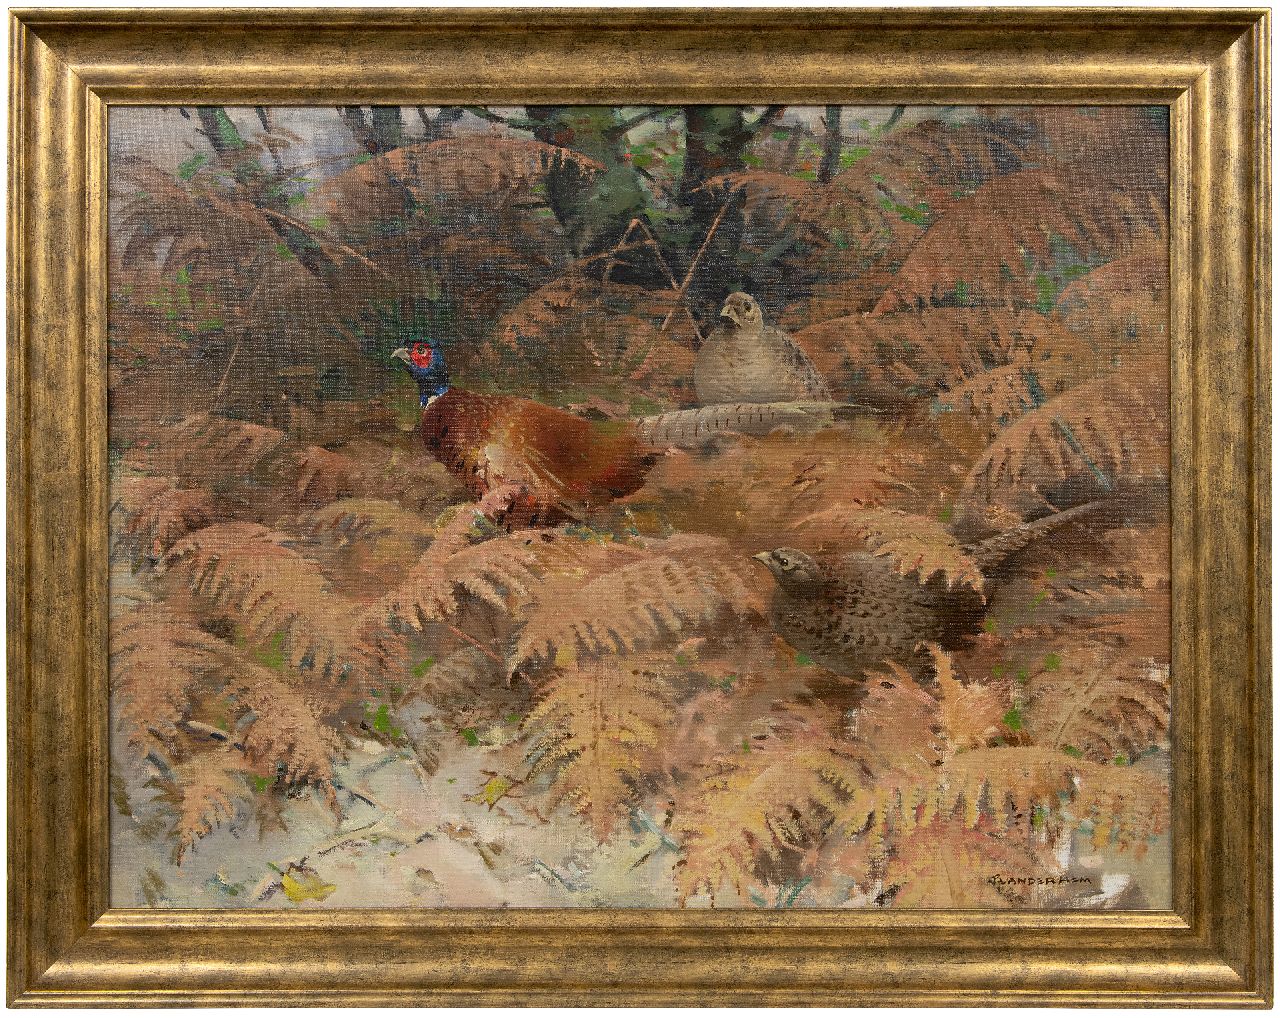 Hem P. van der | Pieter 'Piet' van der Hem | Schilderijen te koop aangeboden | Fazantenhaan met twee hennen tussen varens, olieverf op doek 75,5 x 100,0 cm, gesigneerd rechtsonder